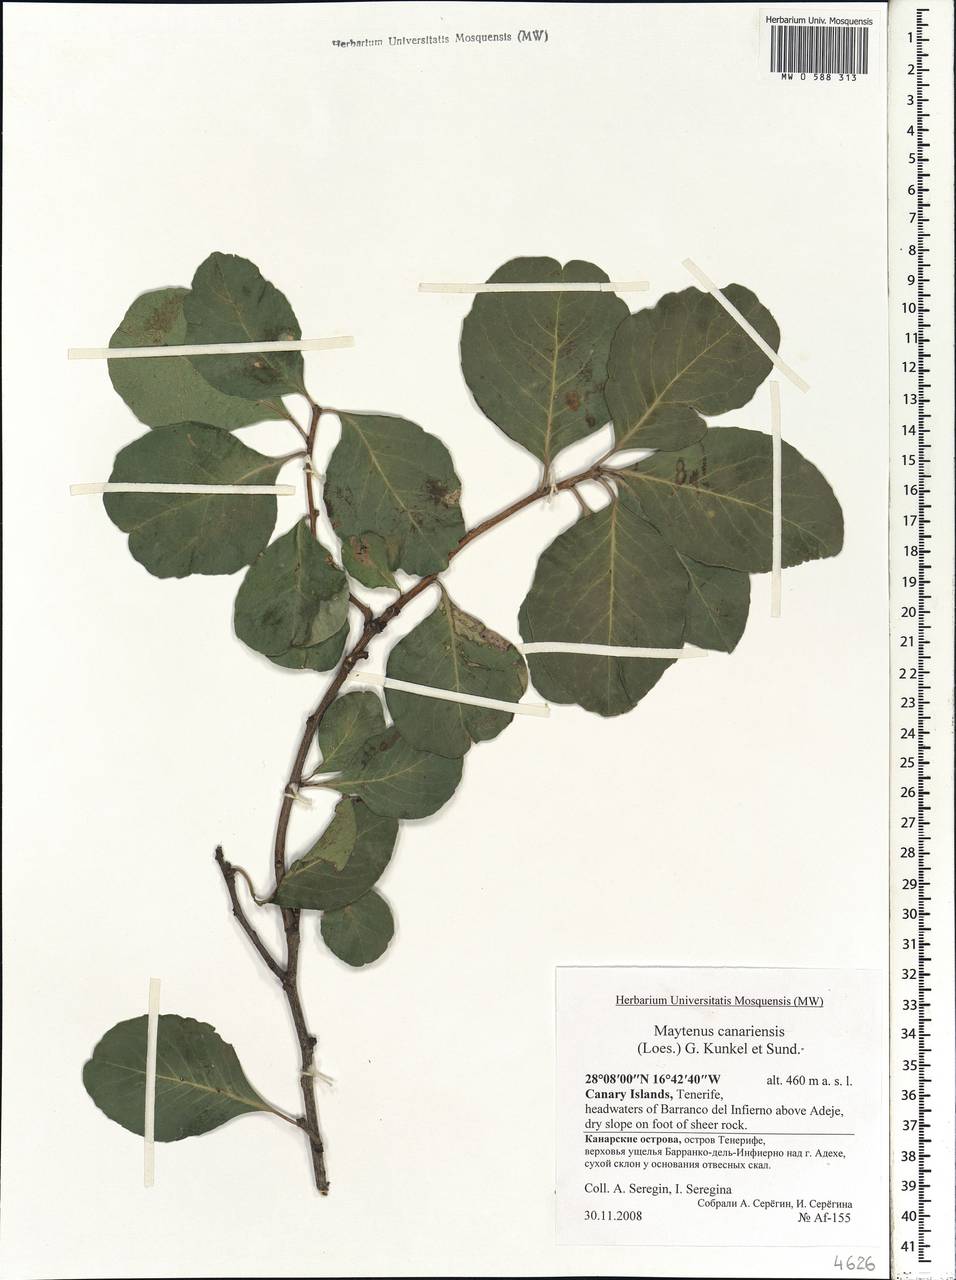 Gymnosporia cassinoides (L'Hér.) Masf., Африка (AFR) (Испания)